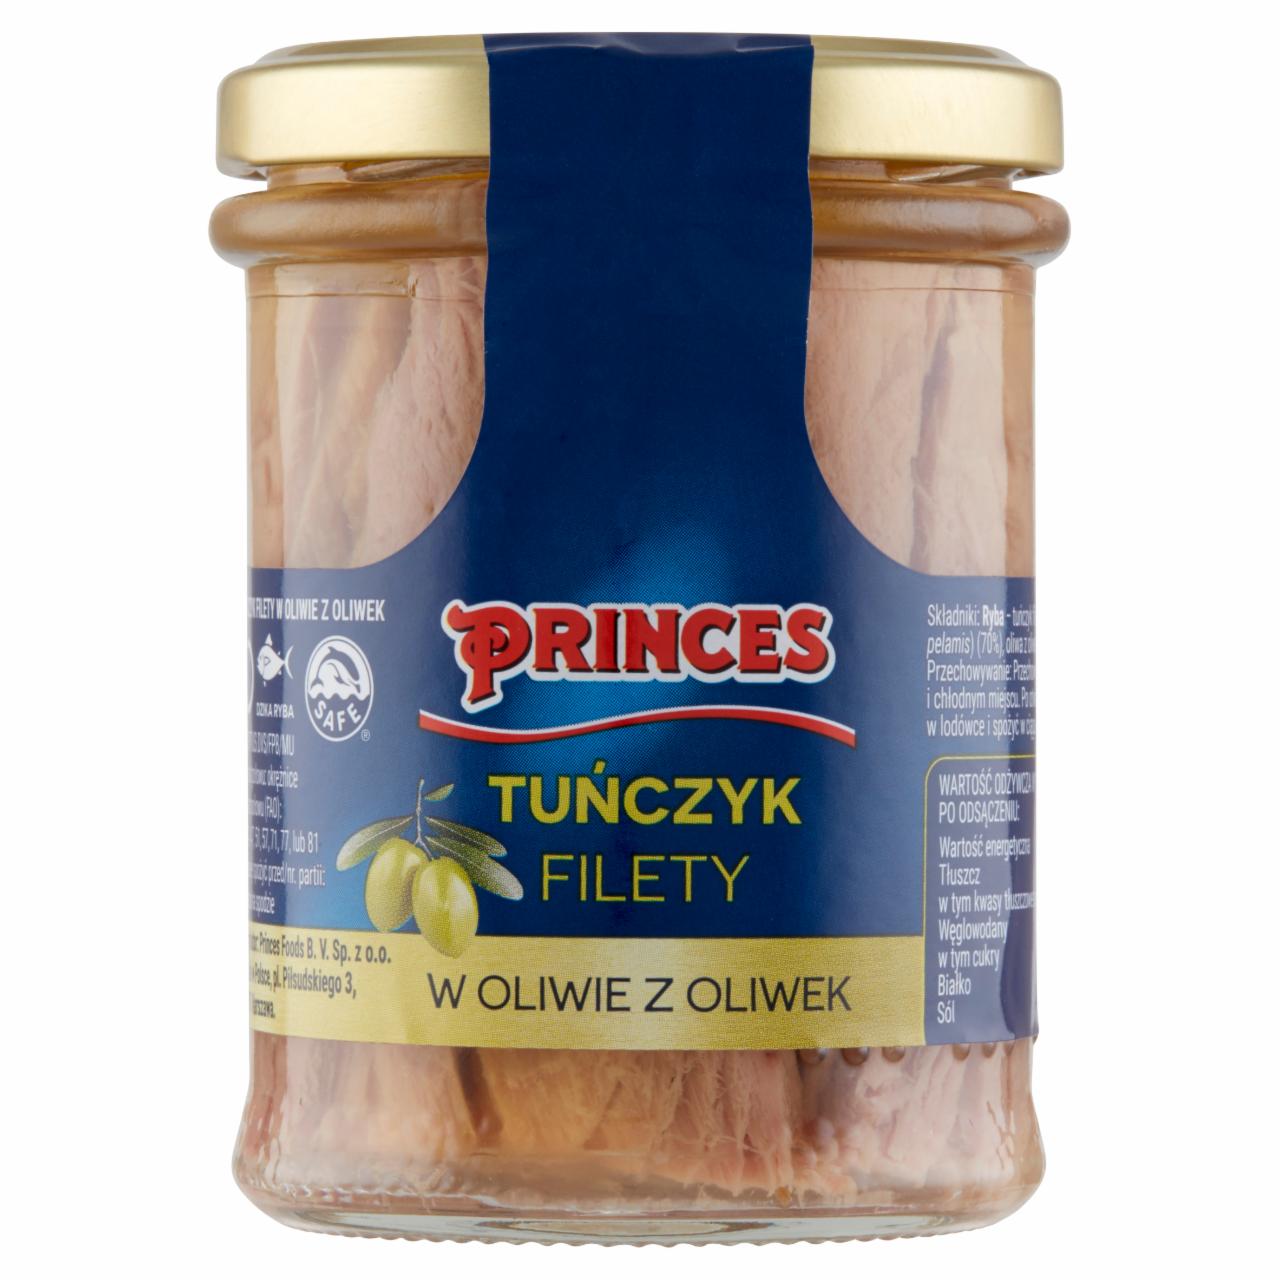 Zdjęcia - Princes Tuńczyk filety w oliwie z oliwek 185 g